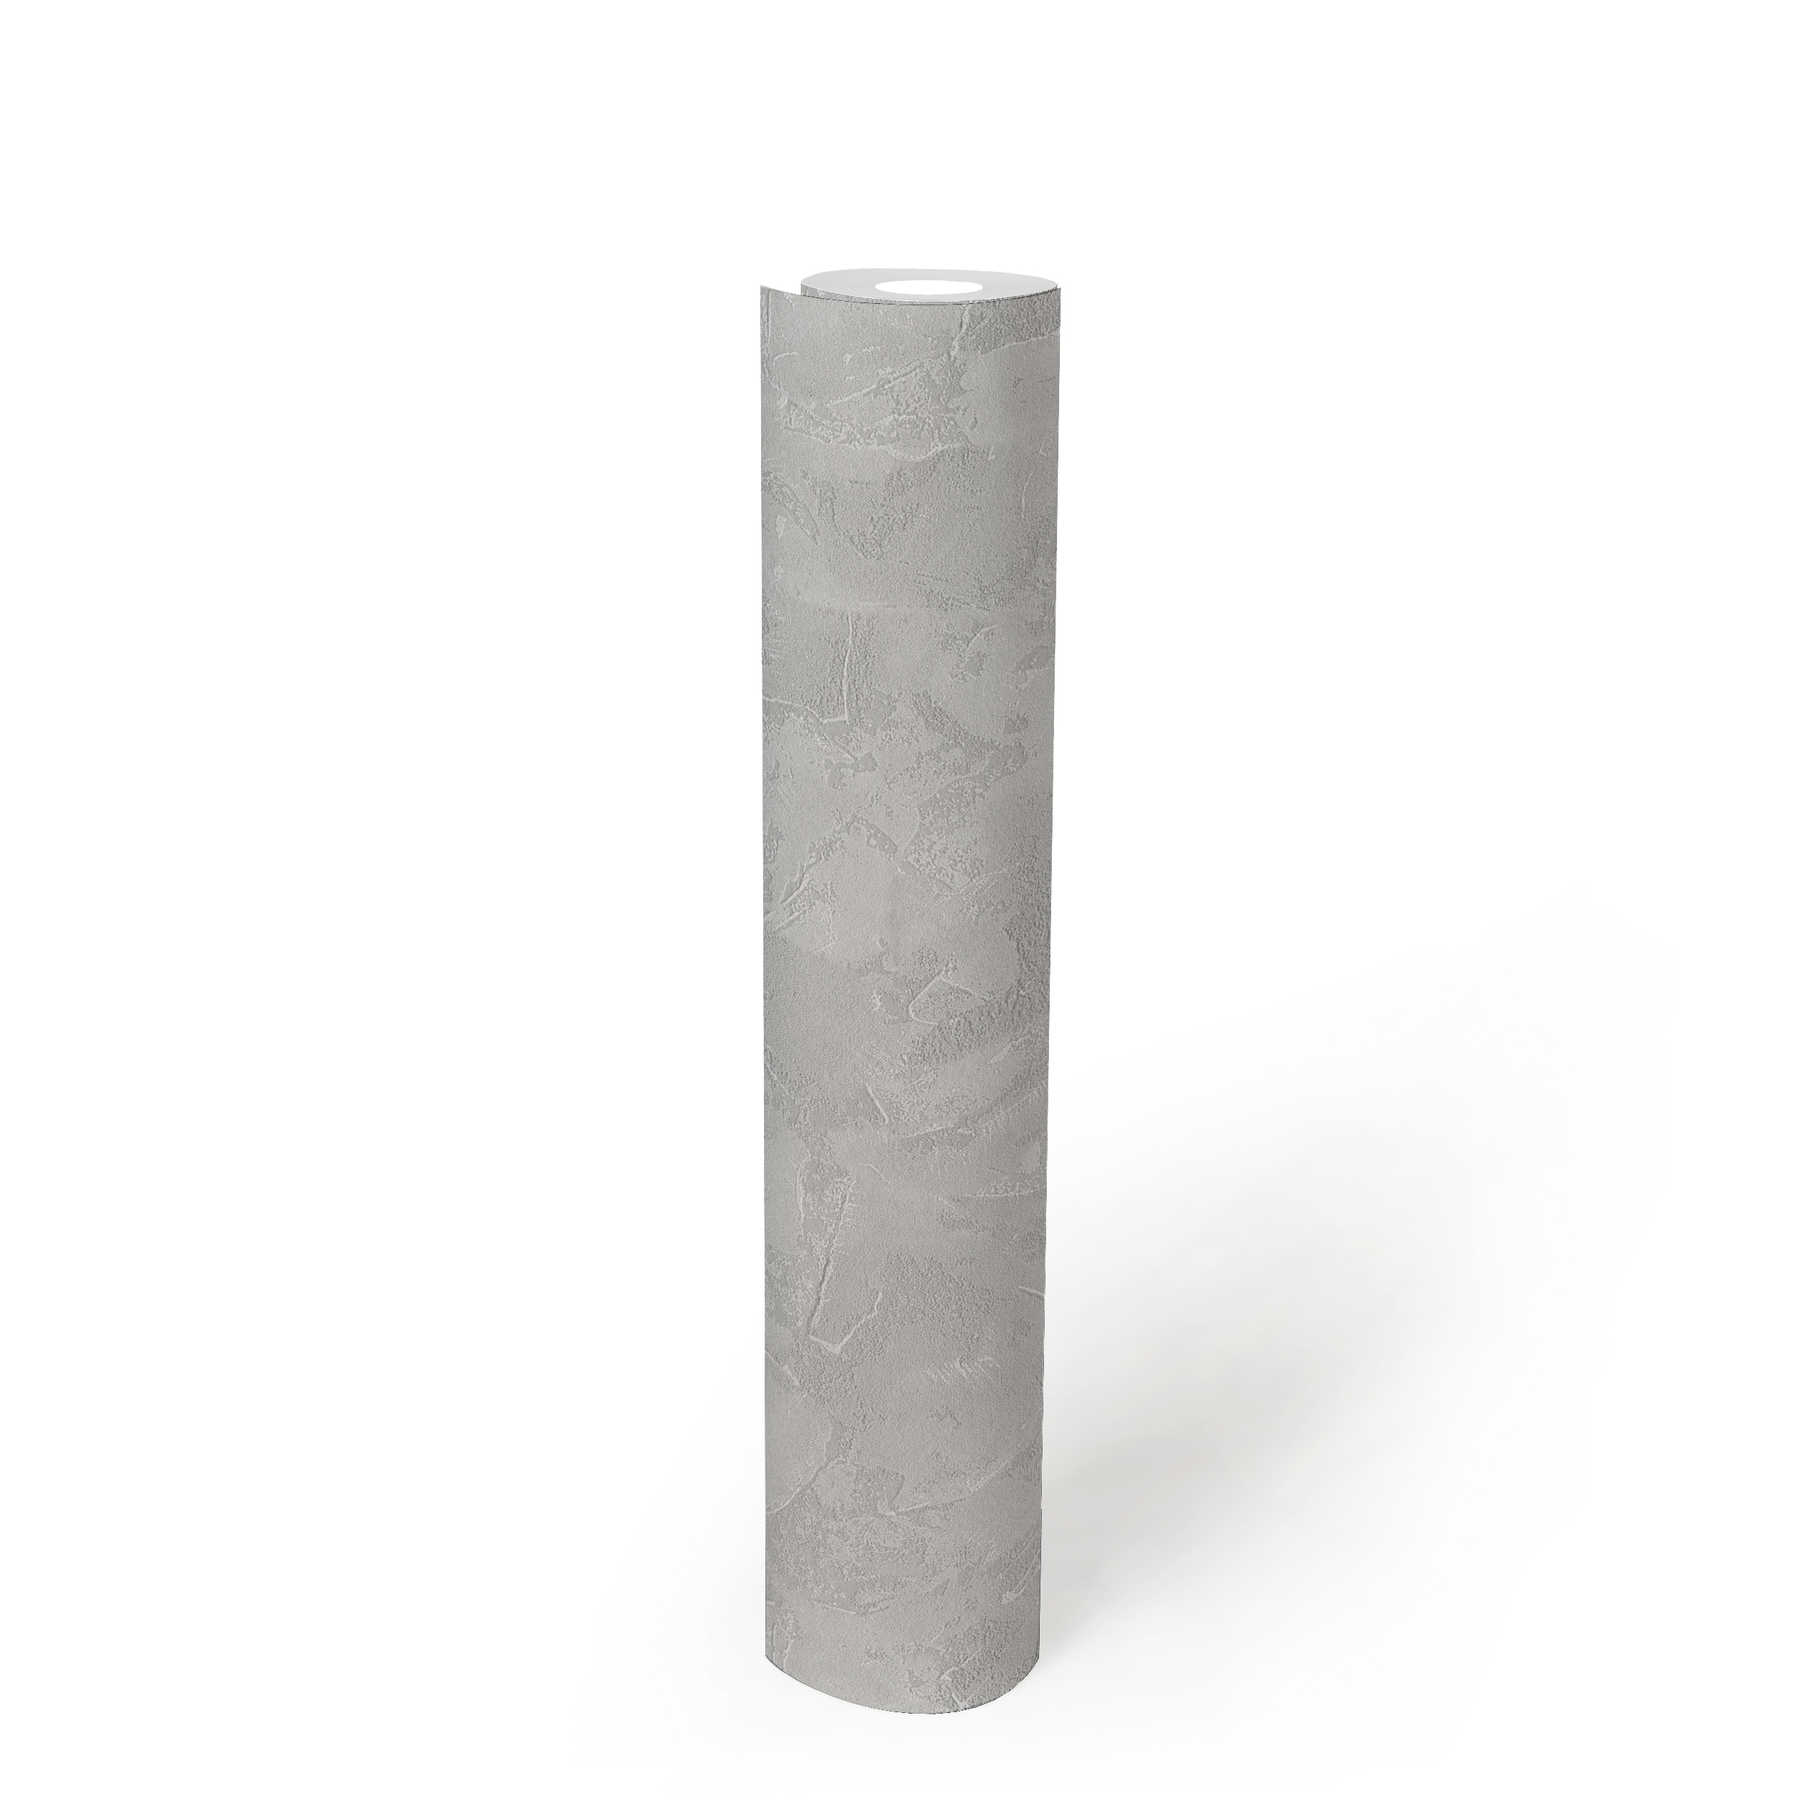             Papier peint intissé aspect plâtre à la truelle avec motifs structurés - gris
        